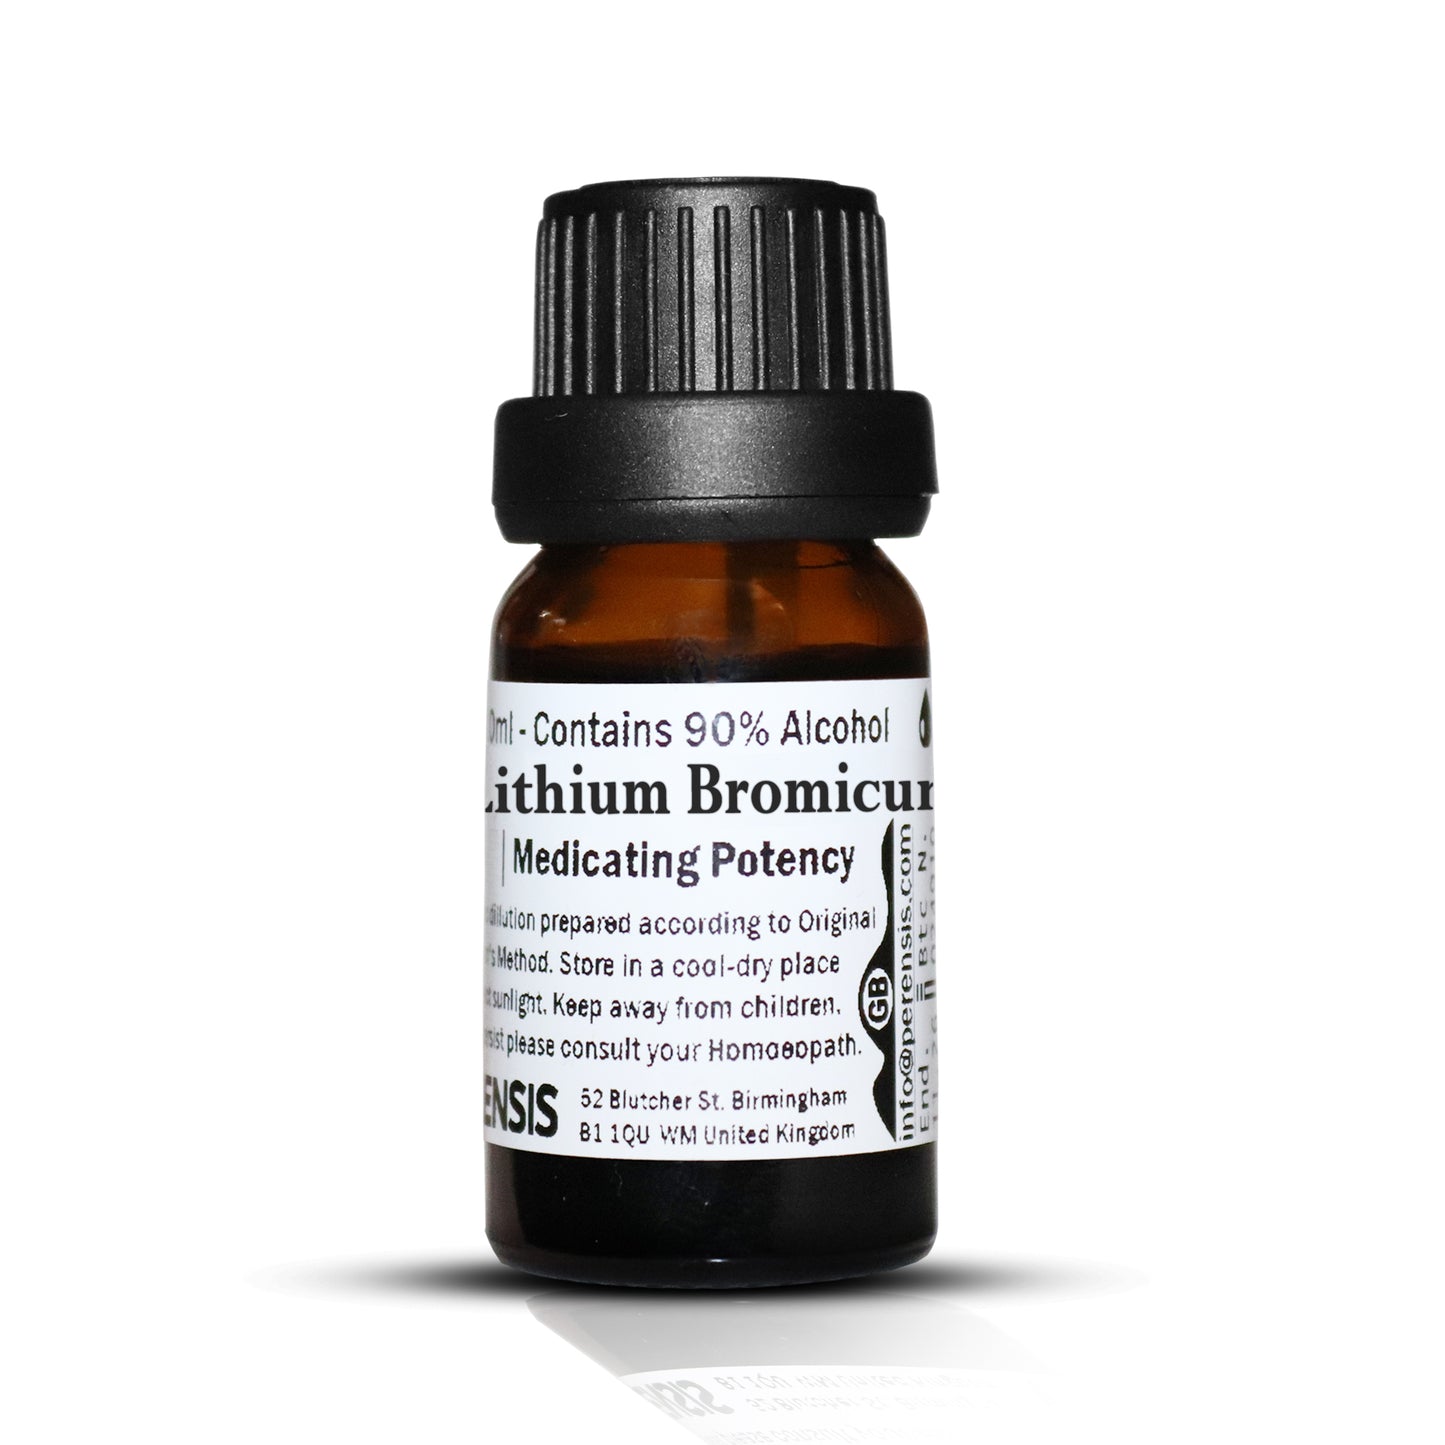 Lithium Bromicum